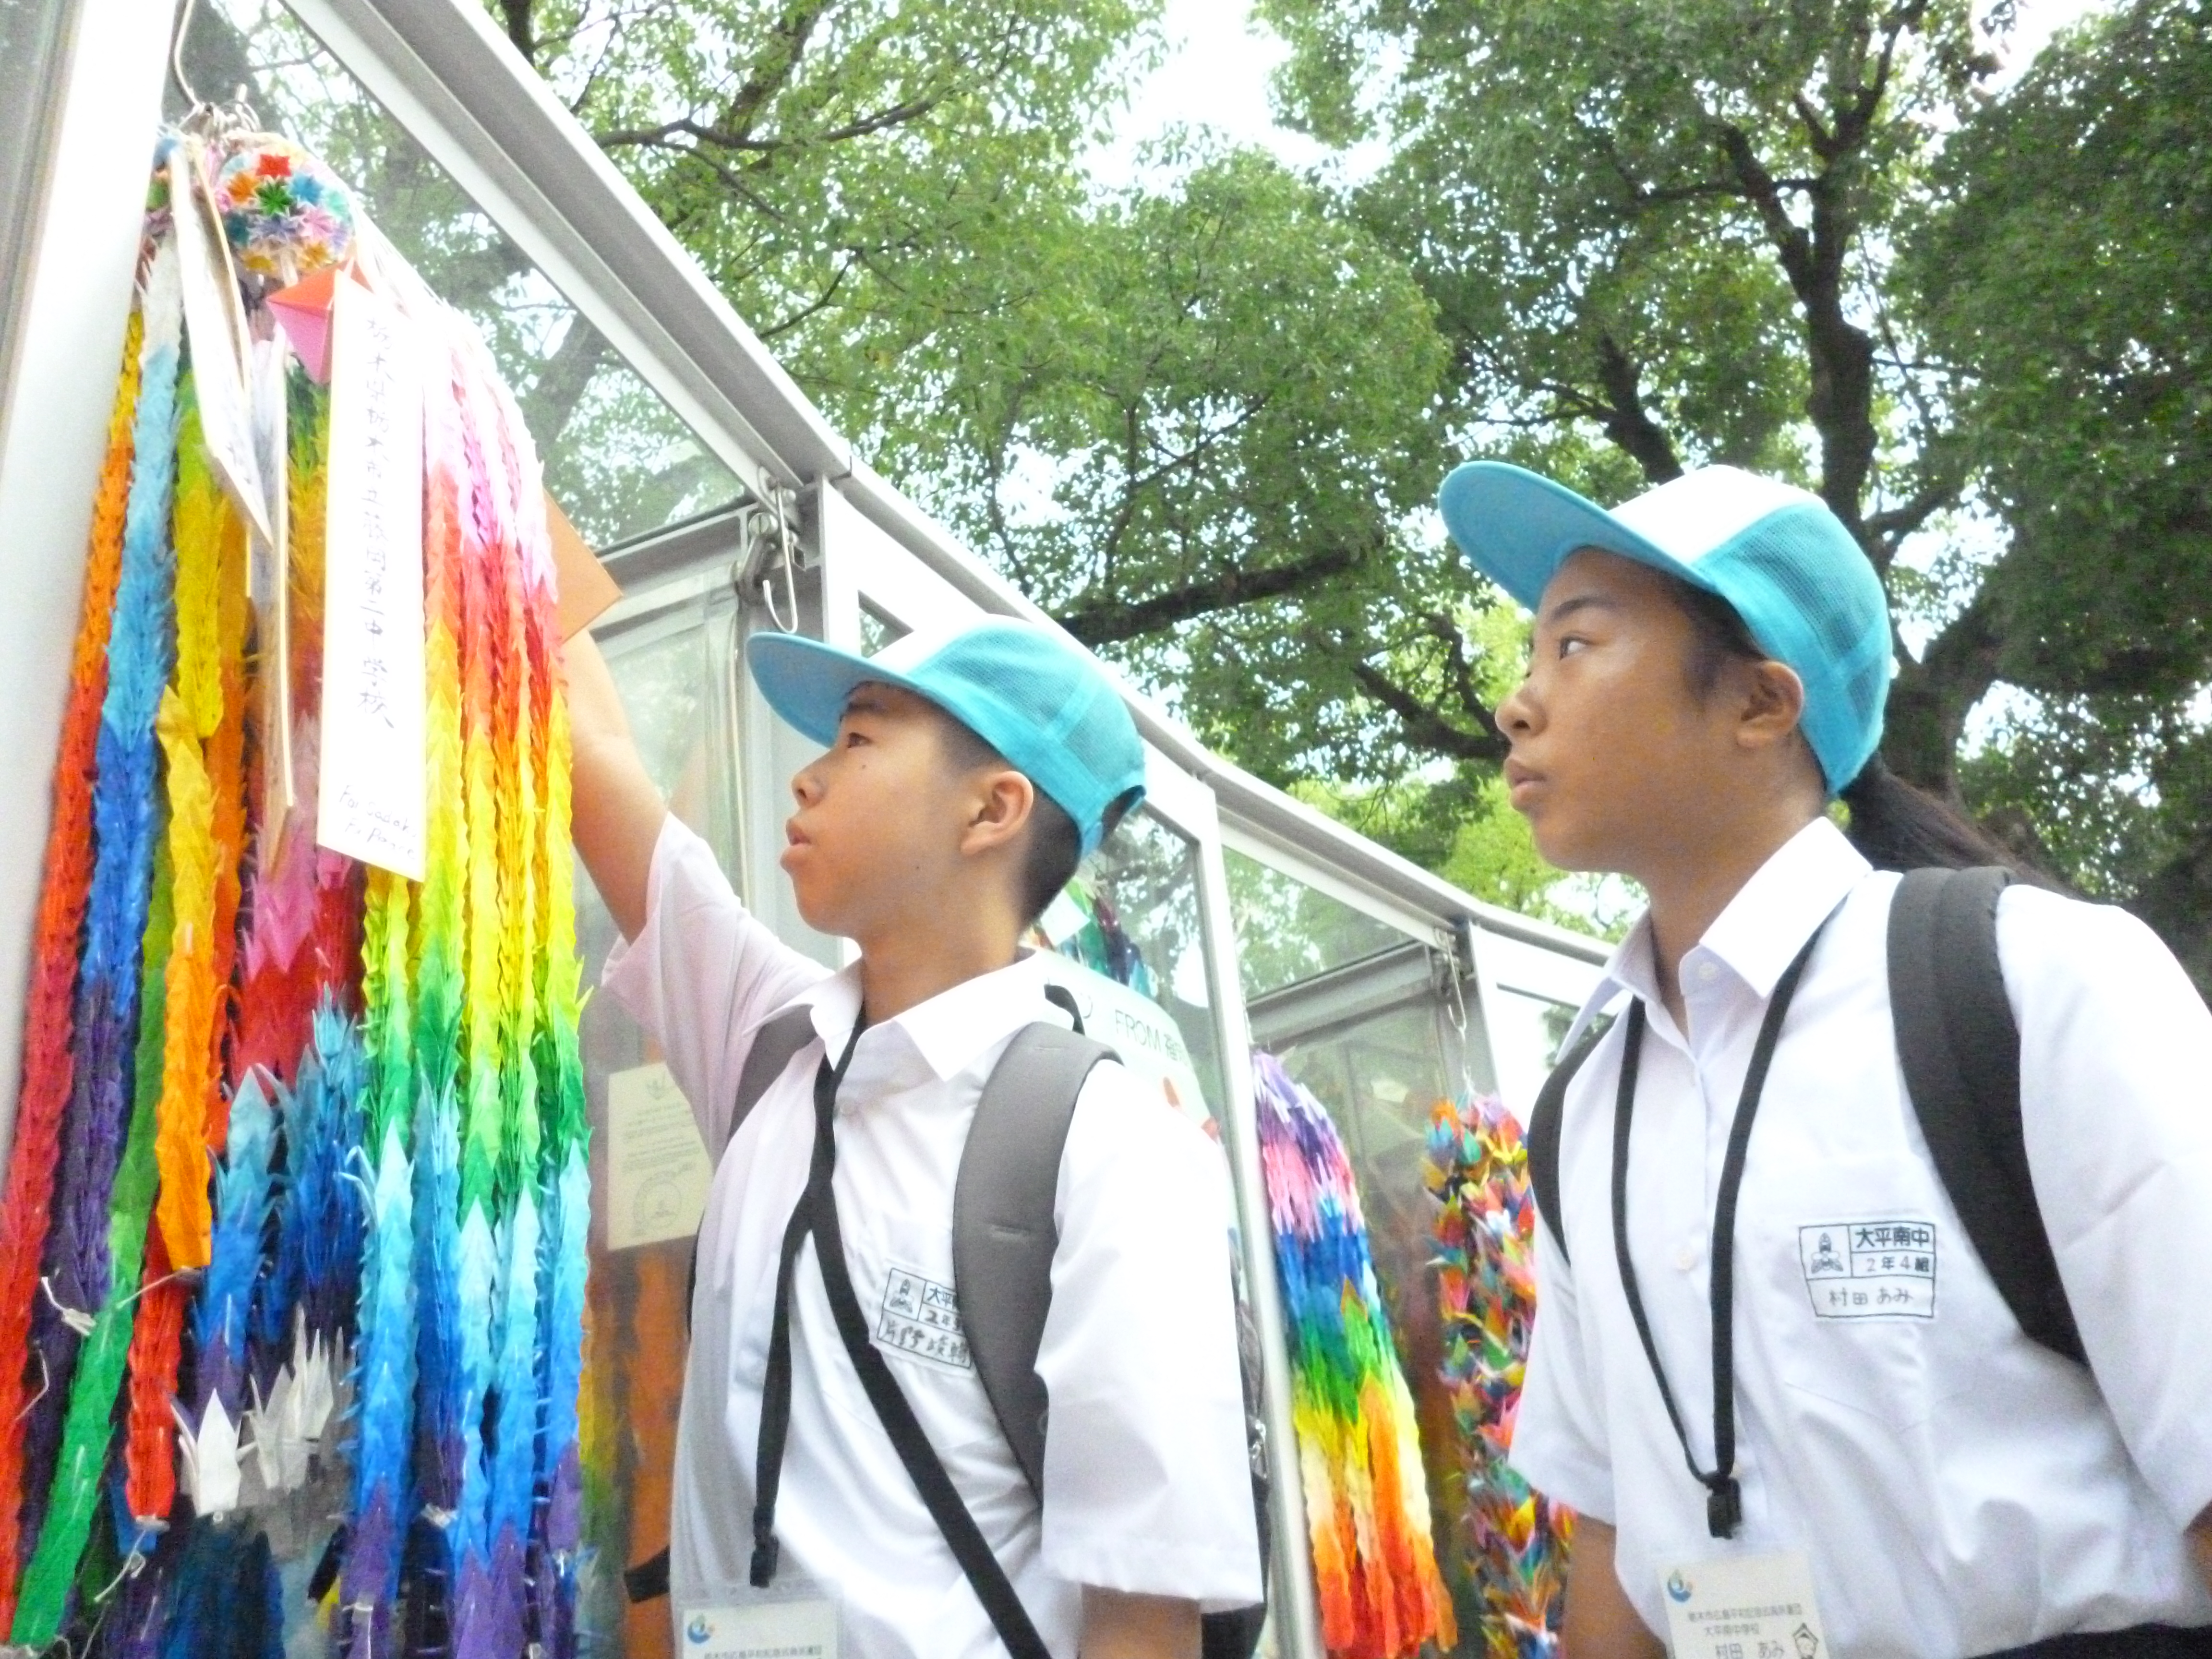 栃木県から広島平和記念式典に参加した中学生